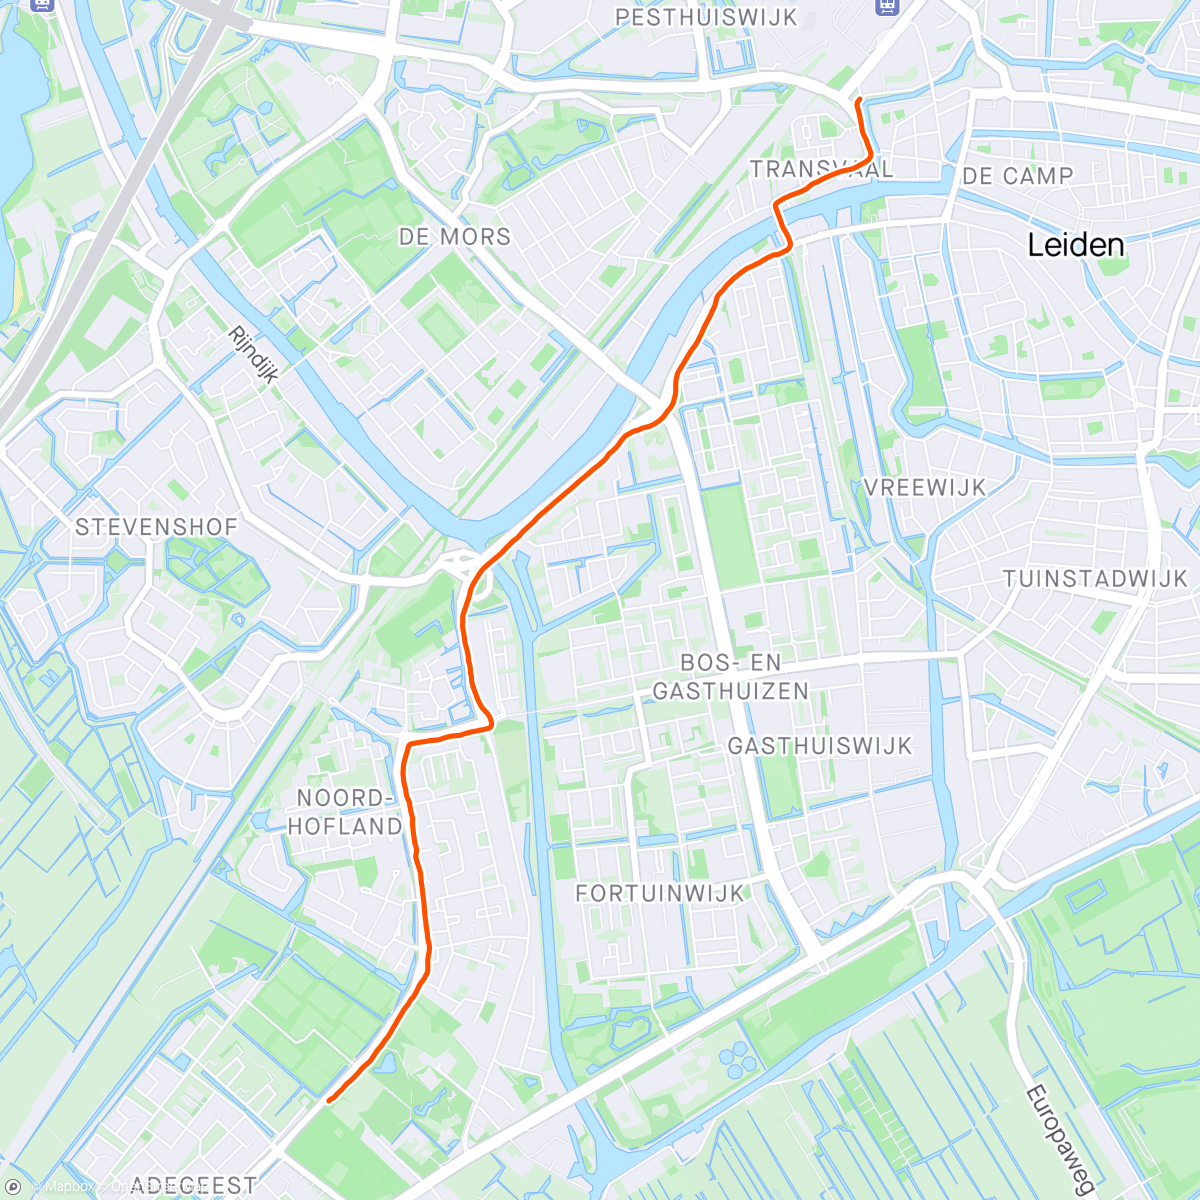 Mappa dell'attività Lekker wandelen naar de stad met Mariska, terug op de fiets